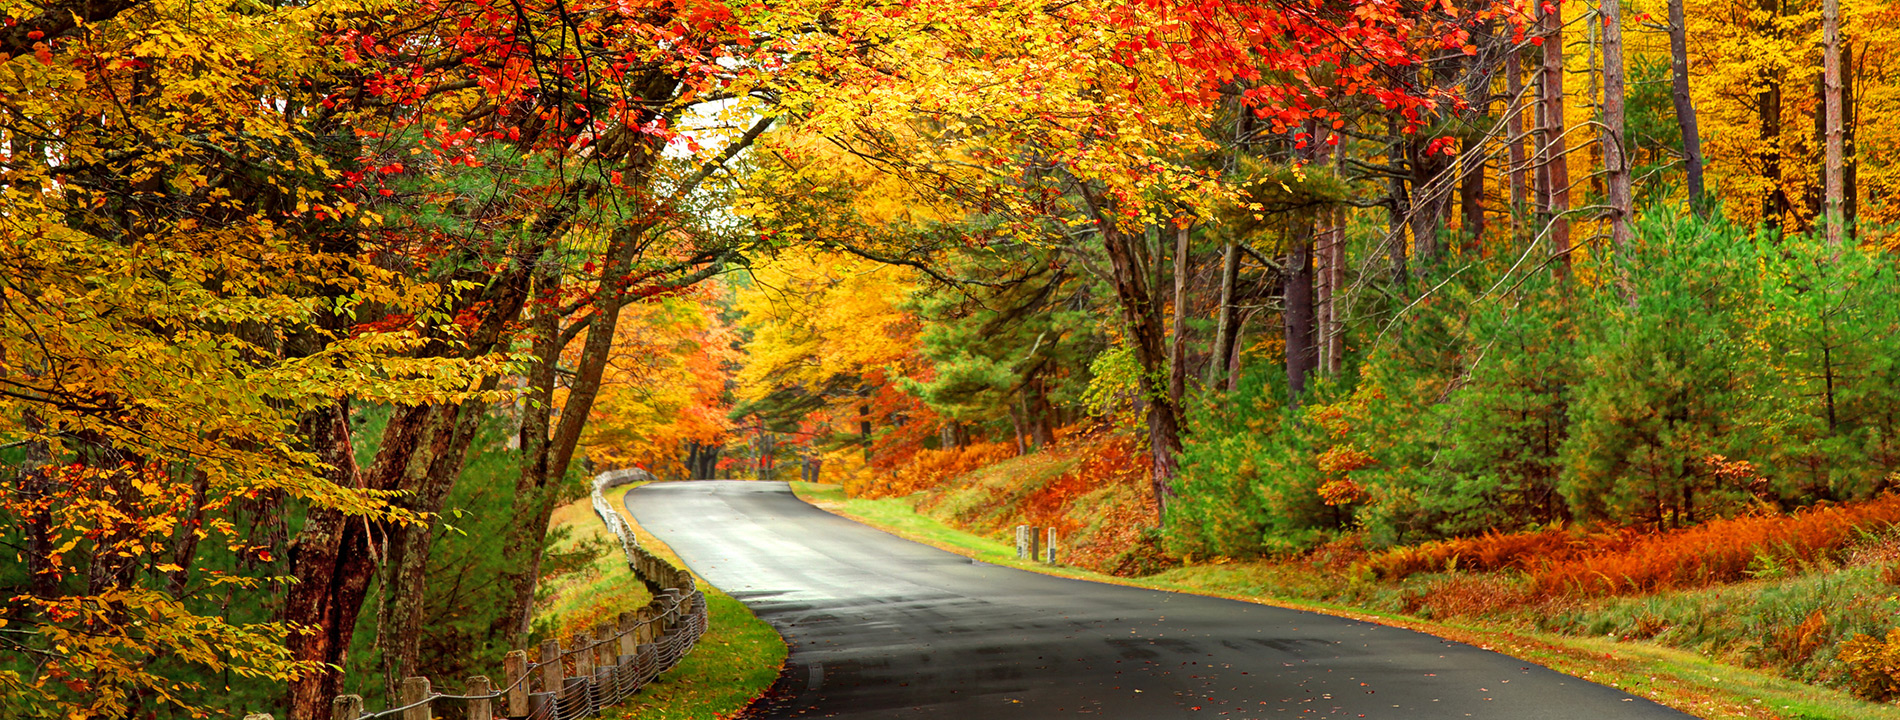 Massachusetts Autumn Road